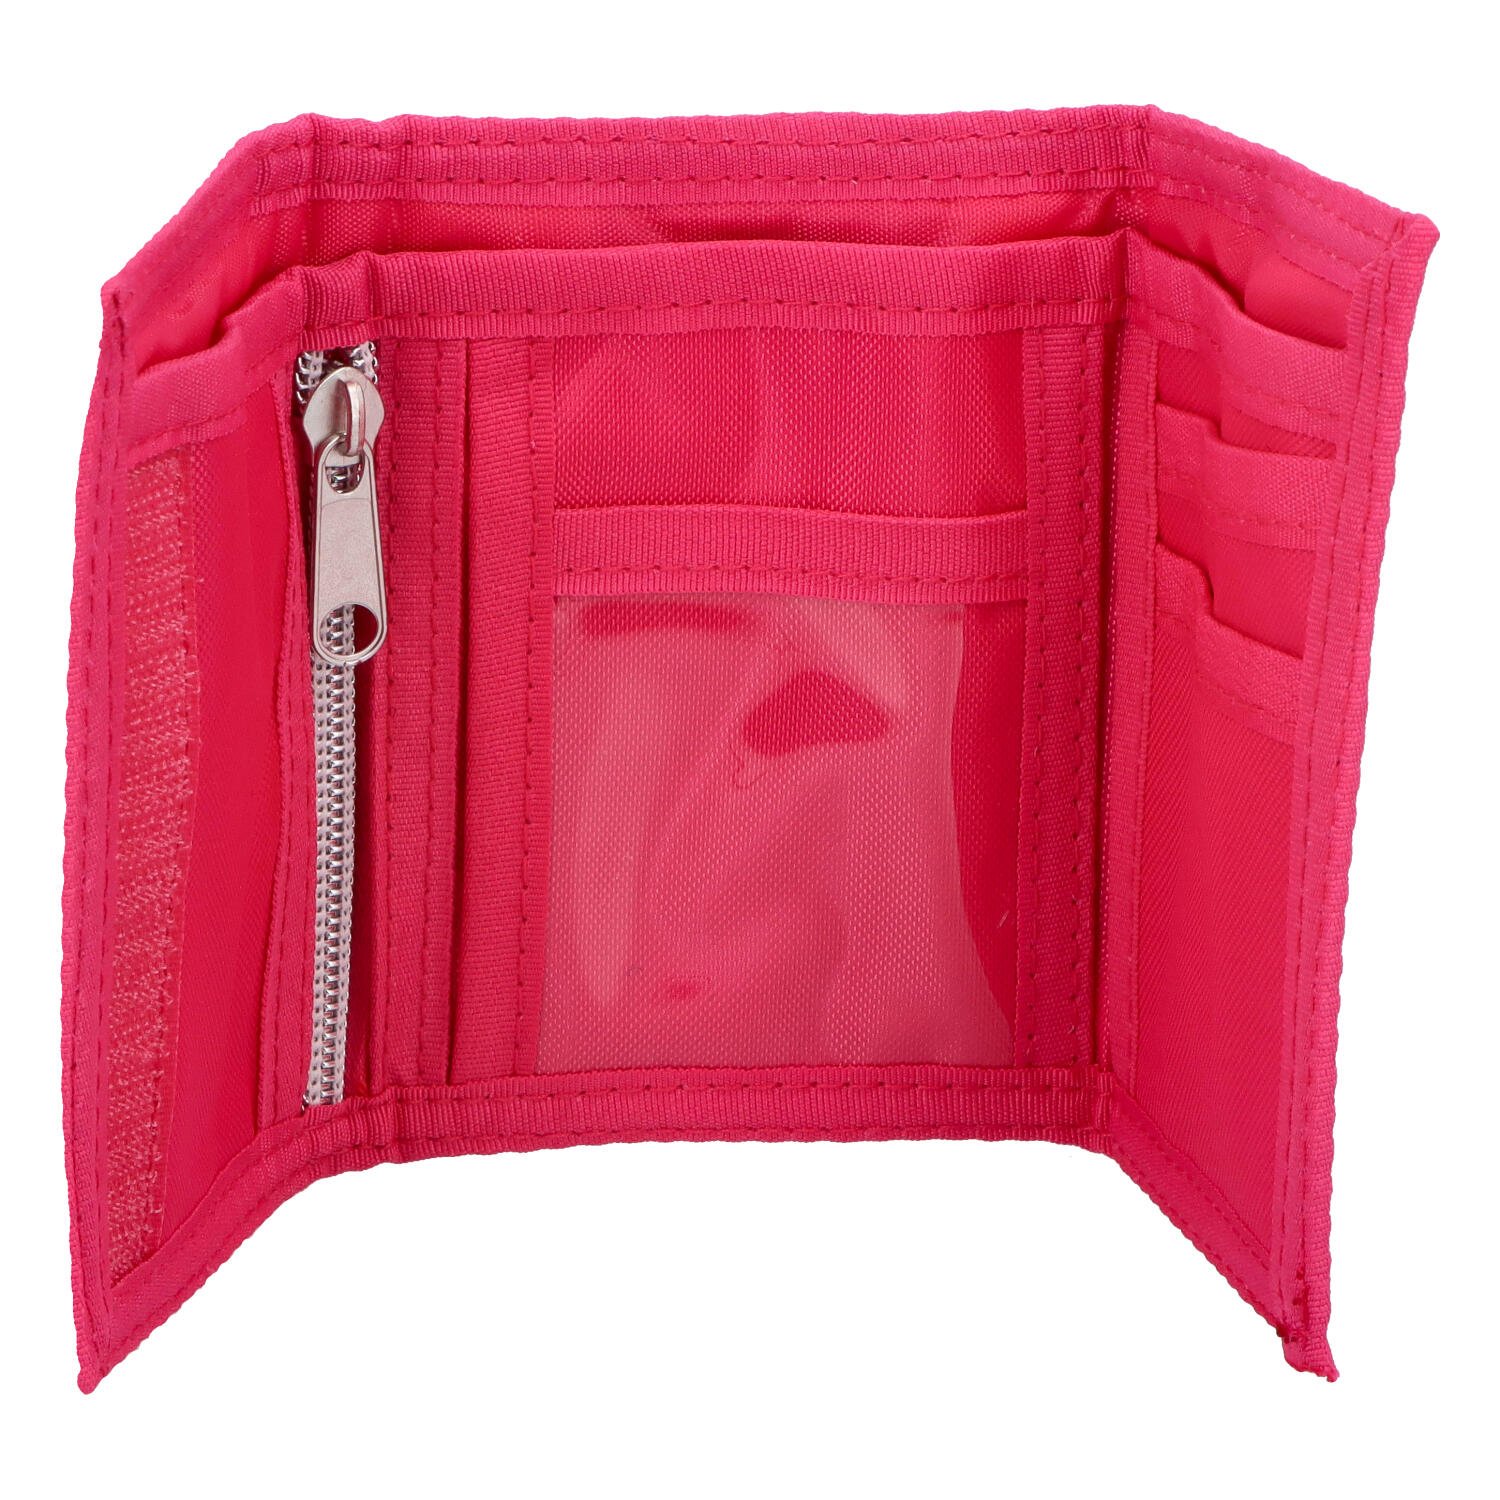 Dětská textilní peněženka Tlapková patrola, růžová